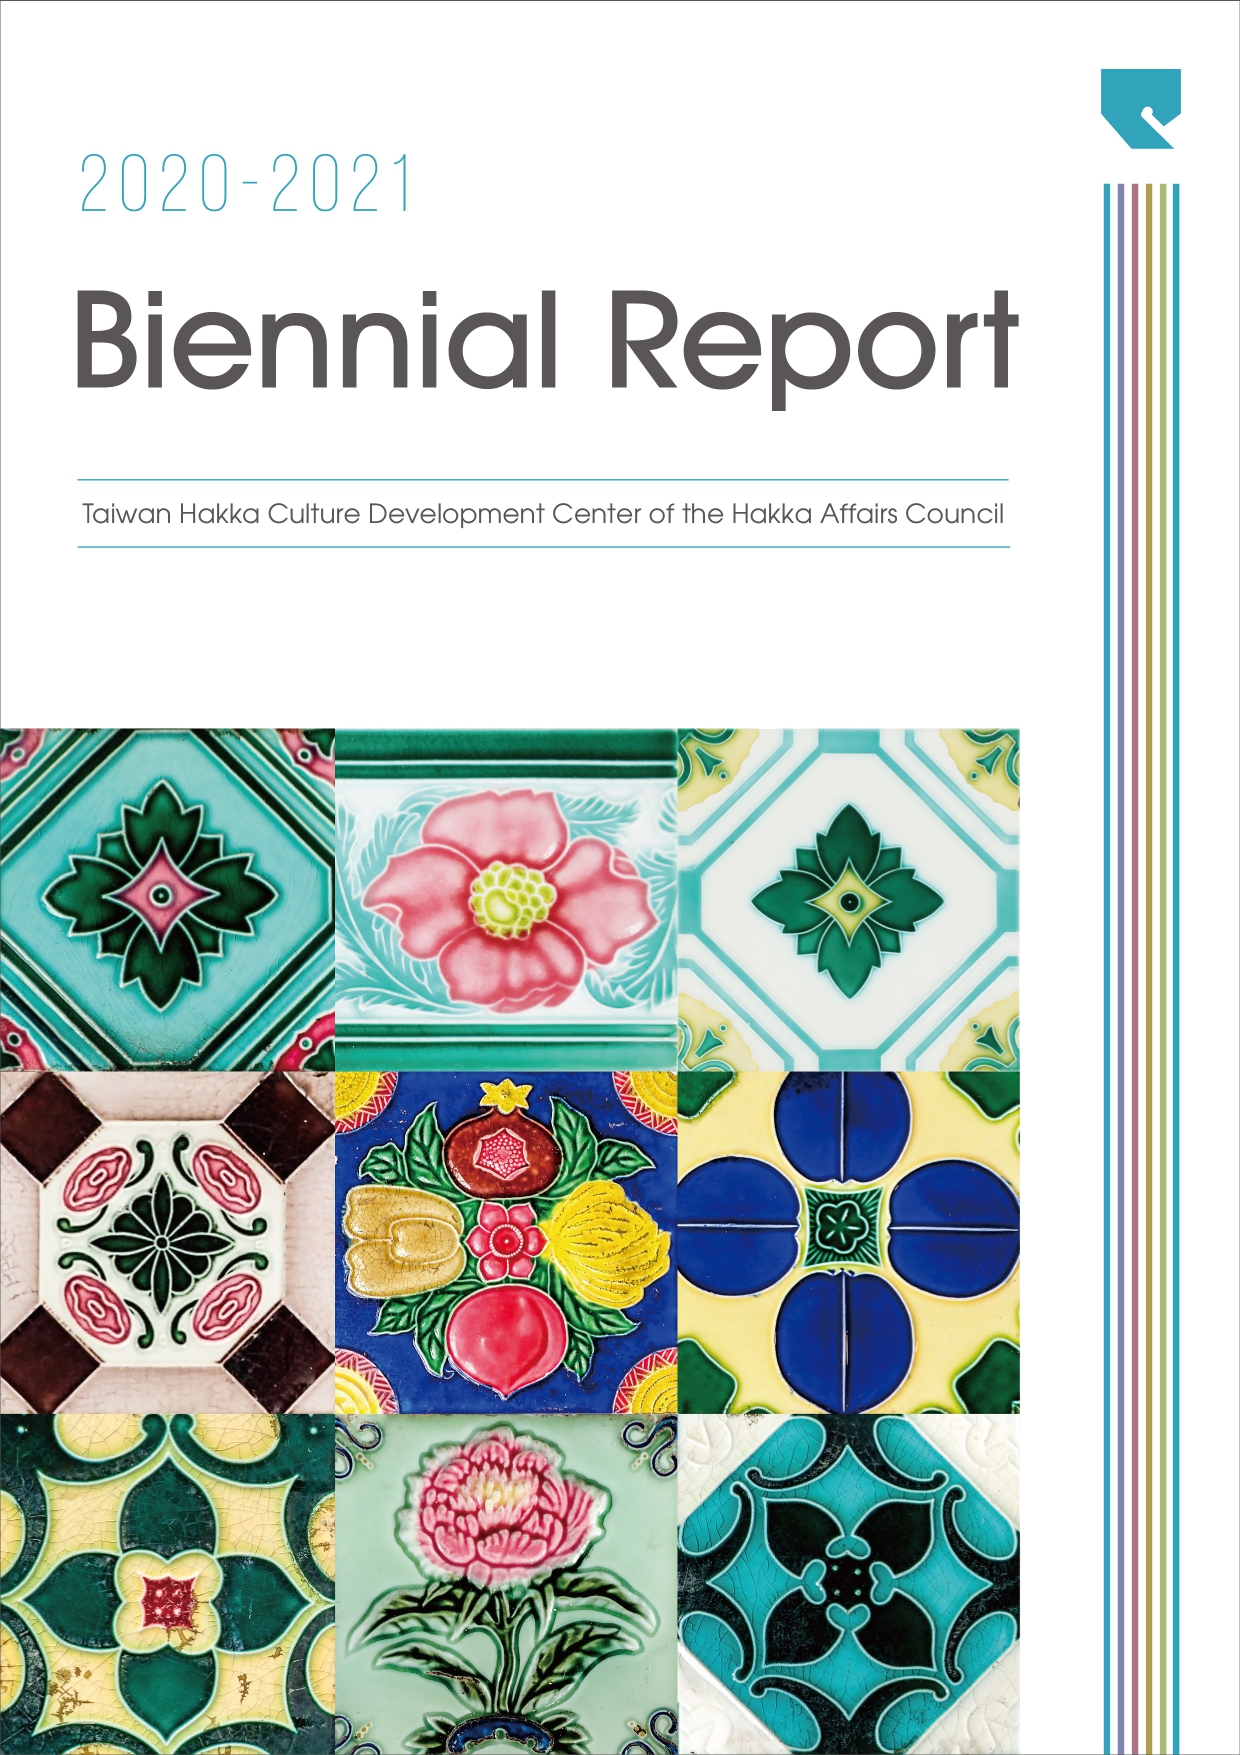 Biennial Report. 2020-2021: Taiwan Hakka Culture Development Center of the Hakka Affairs Council 